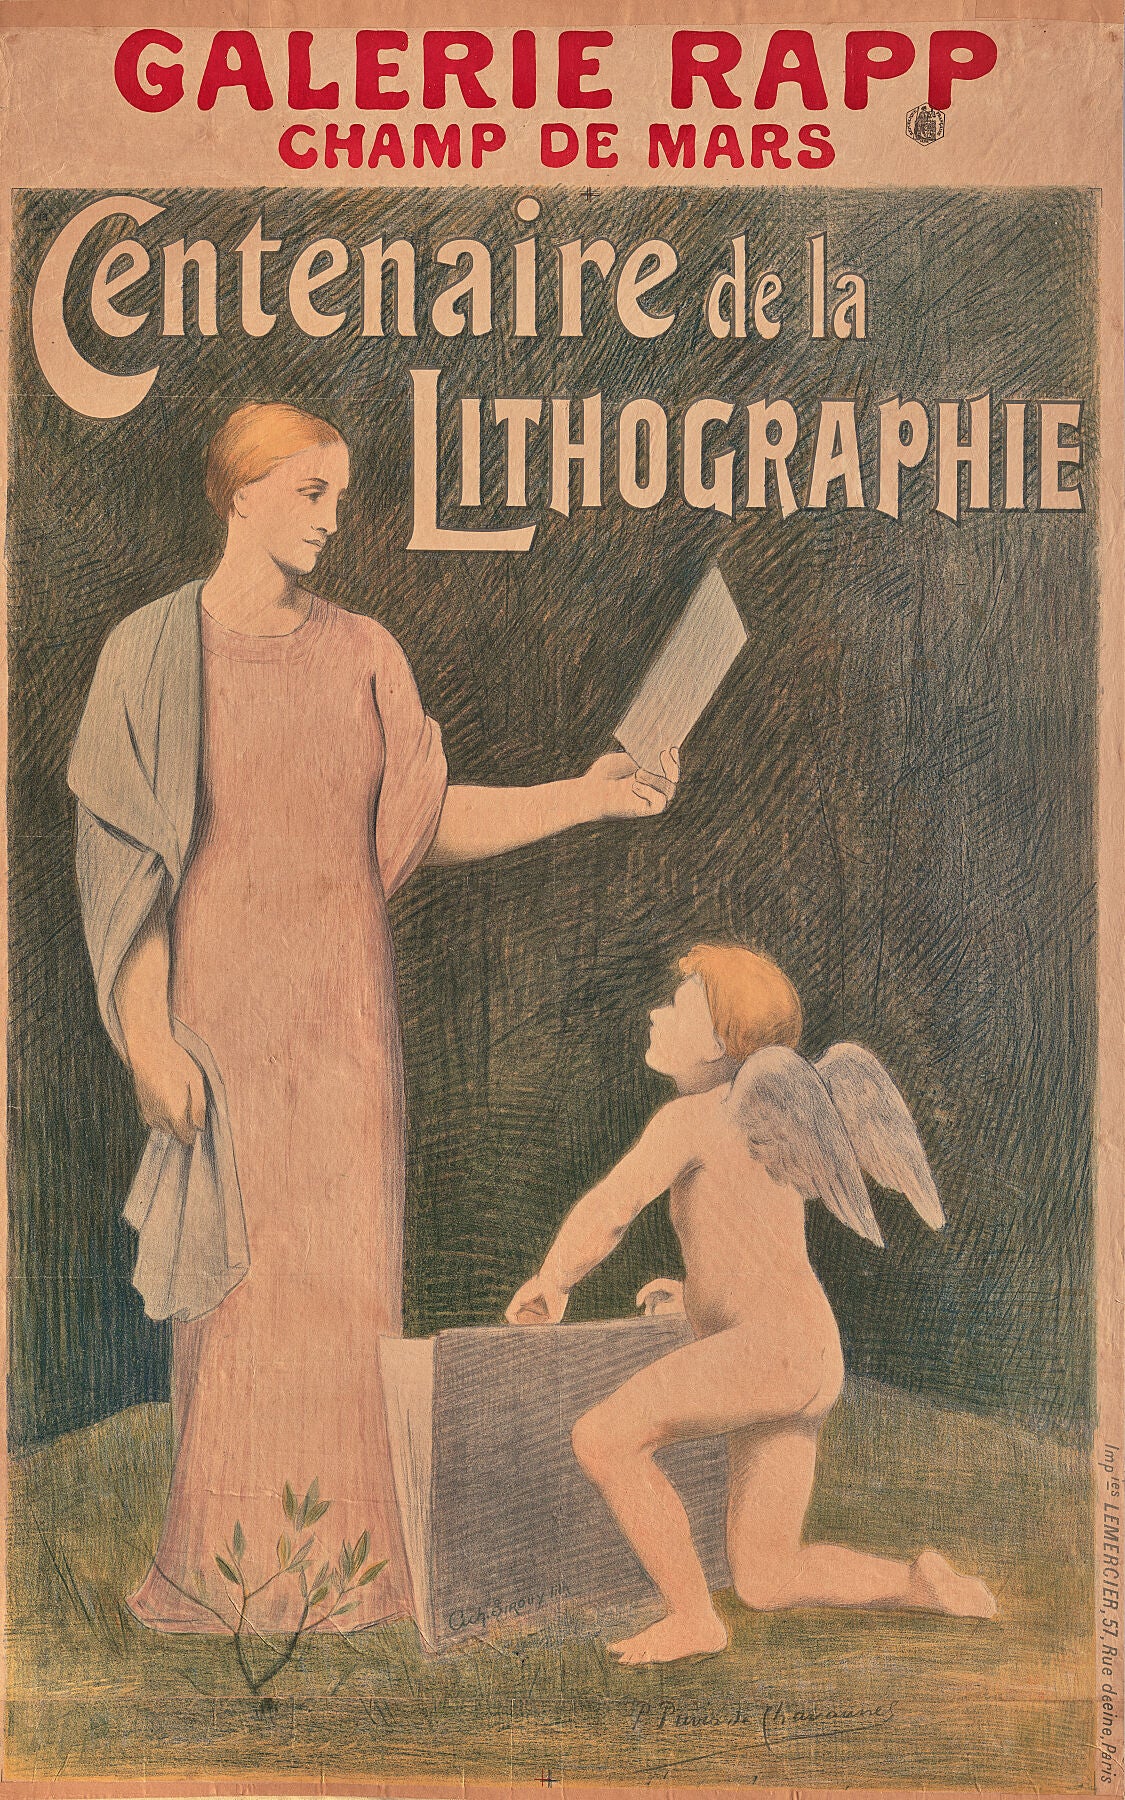 Centennial of Lithography by Pierre Puvis de Chavannes - 1895